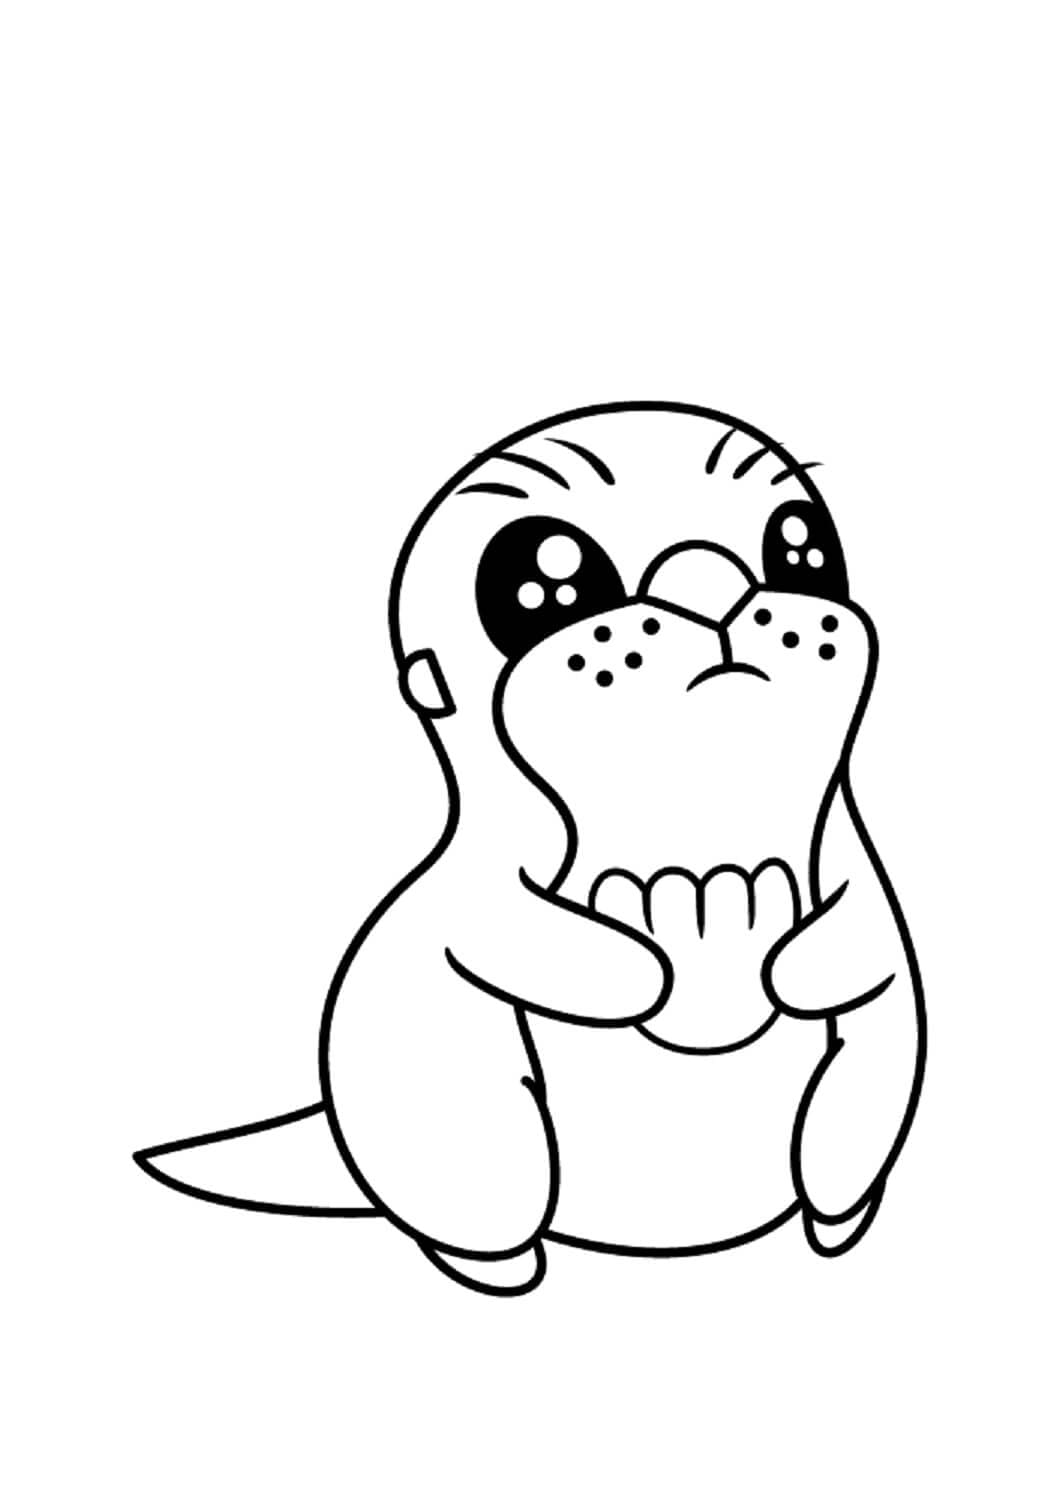 앉아 있는 귀여운 아기 수달 coloring page